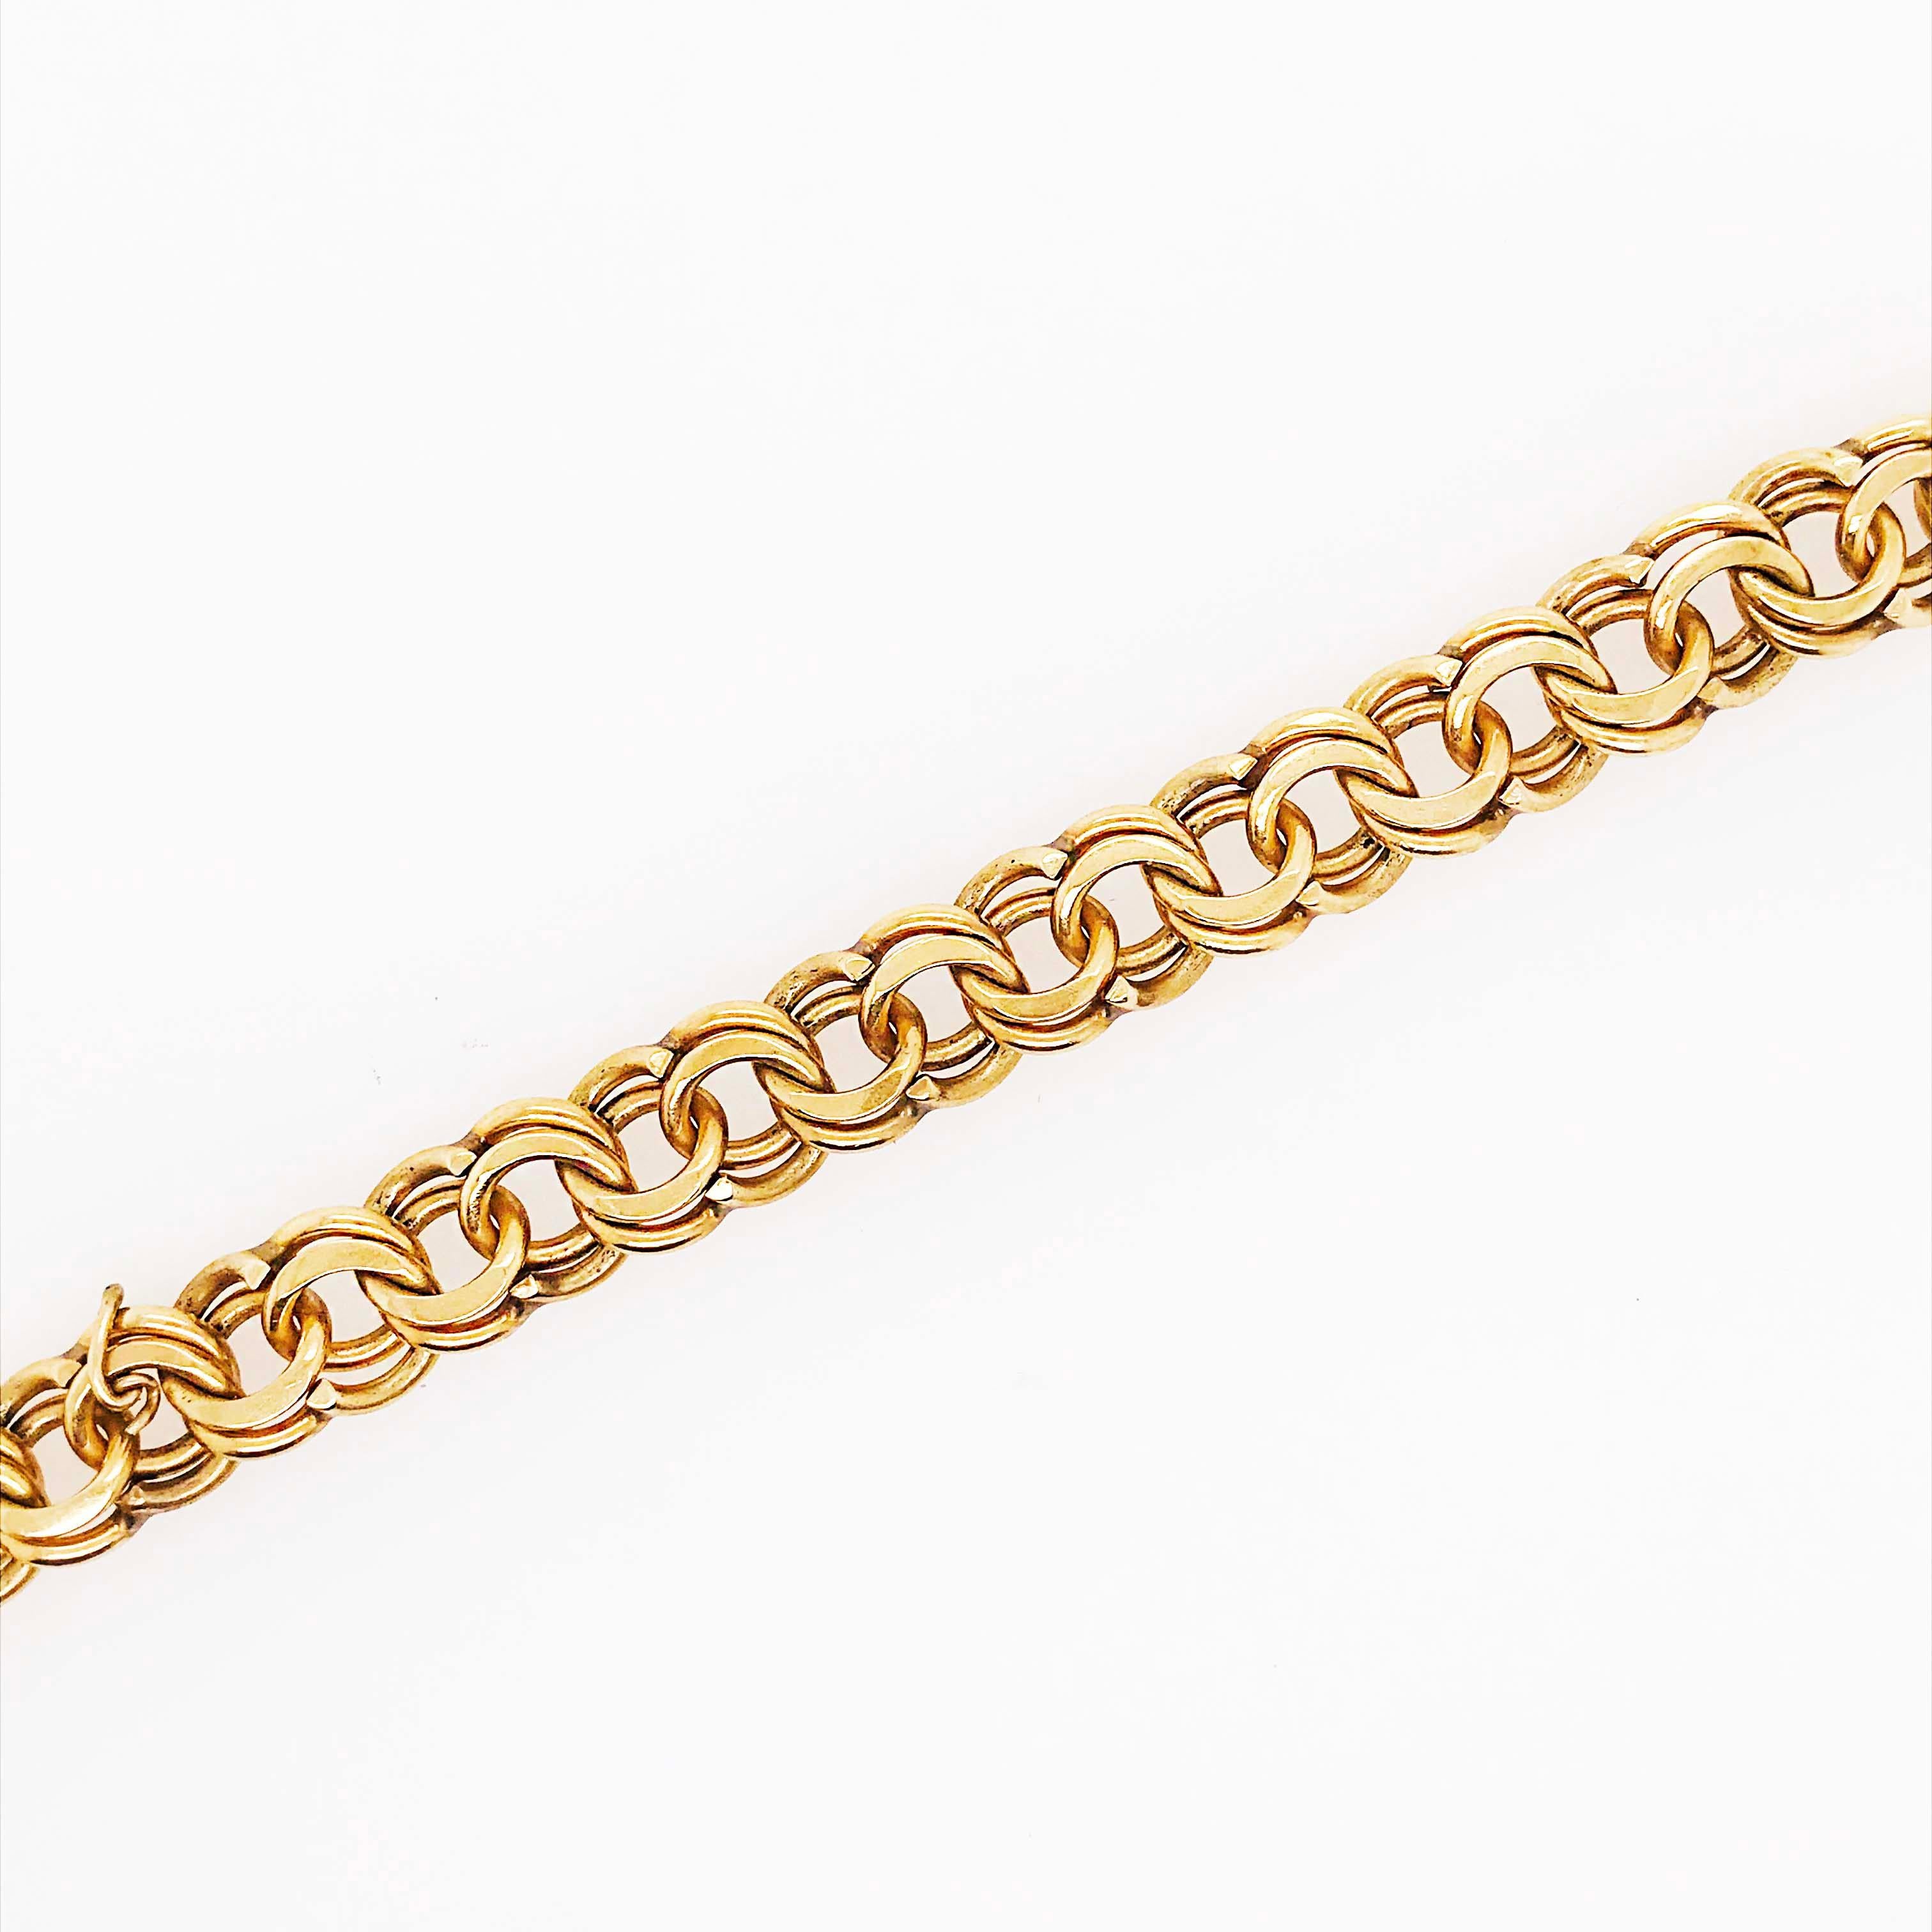 Women's or Men's Heavy Gold Charm Bracelet, 14 Karat Large Gold Chain Bracelet